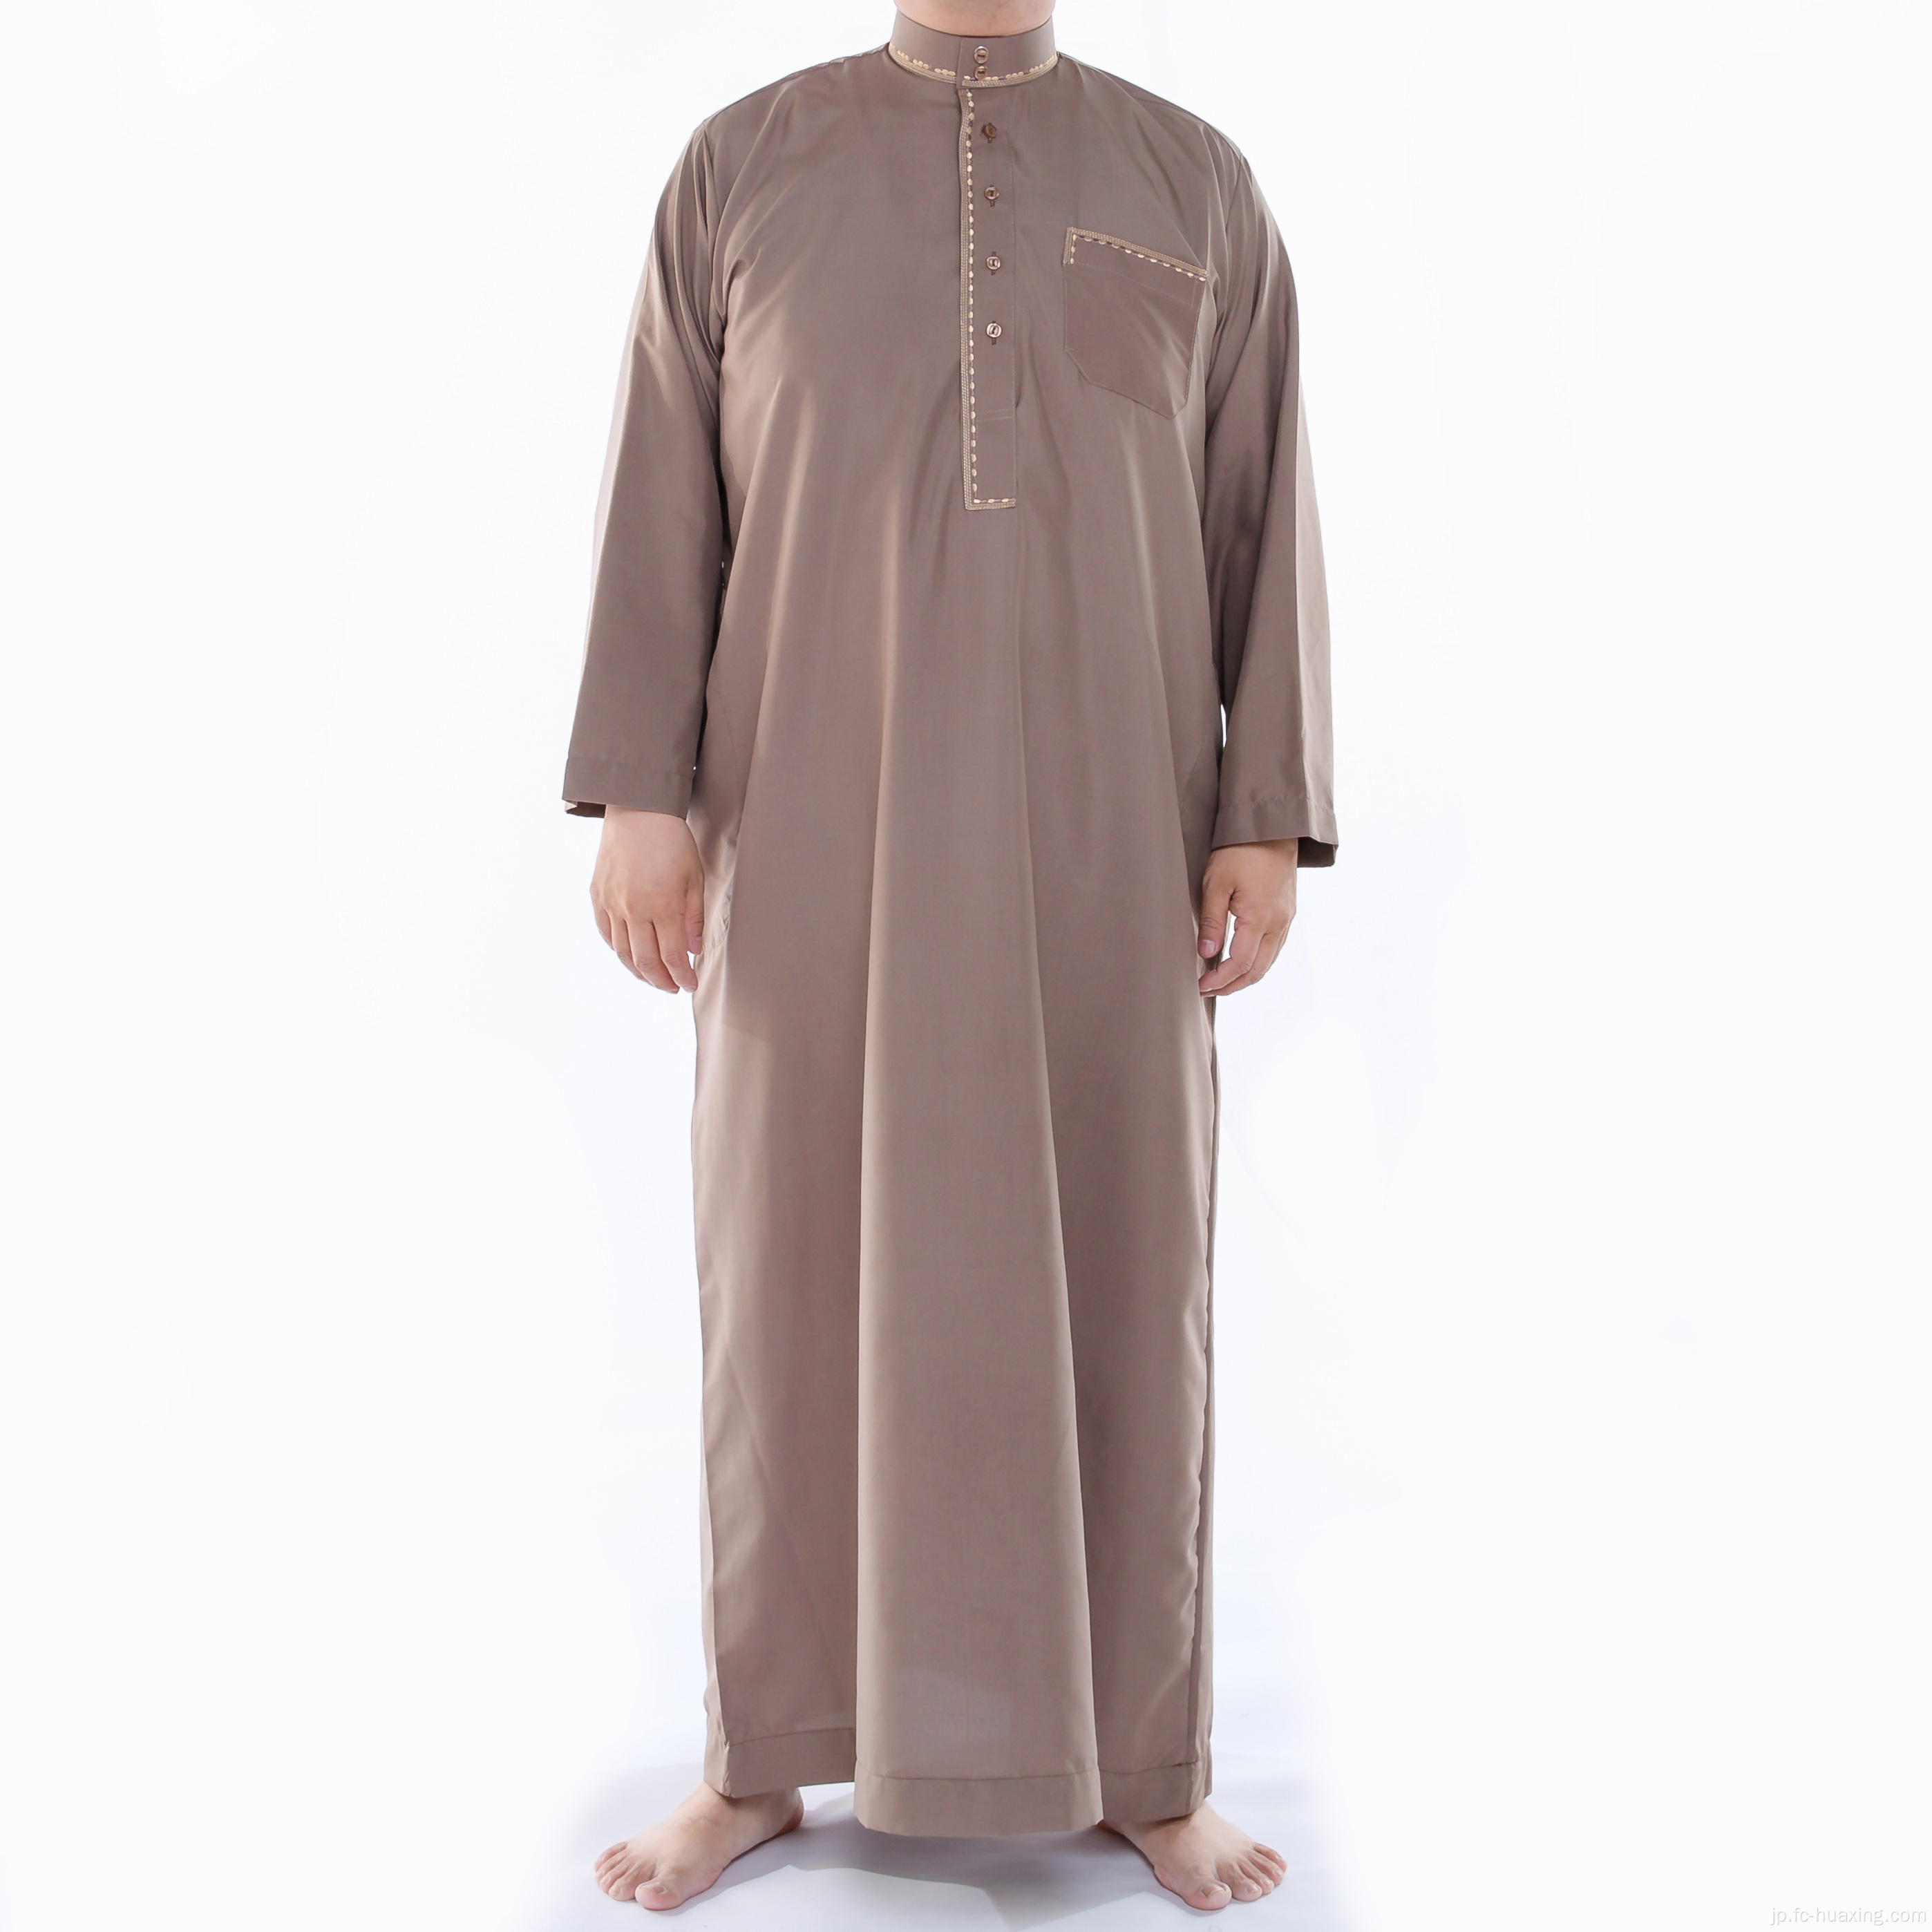 美しいイスラム教徒のイスラム系男性服の少年アバヤ